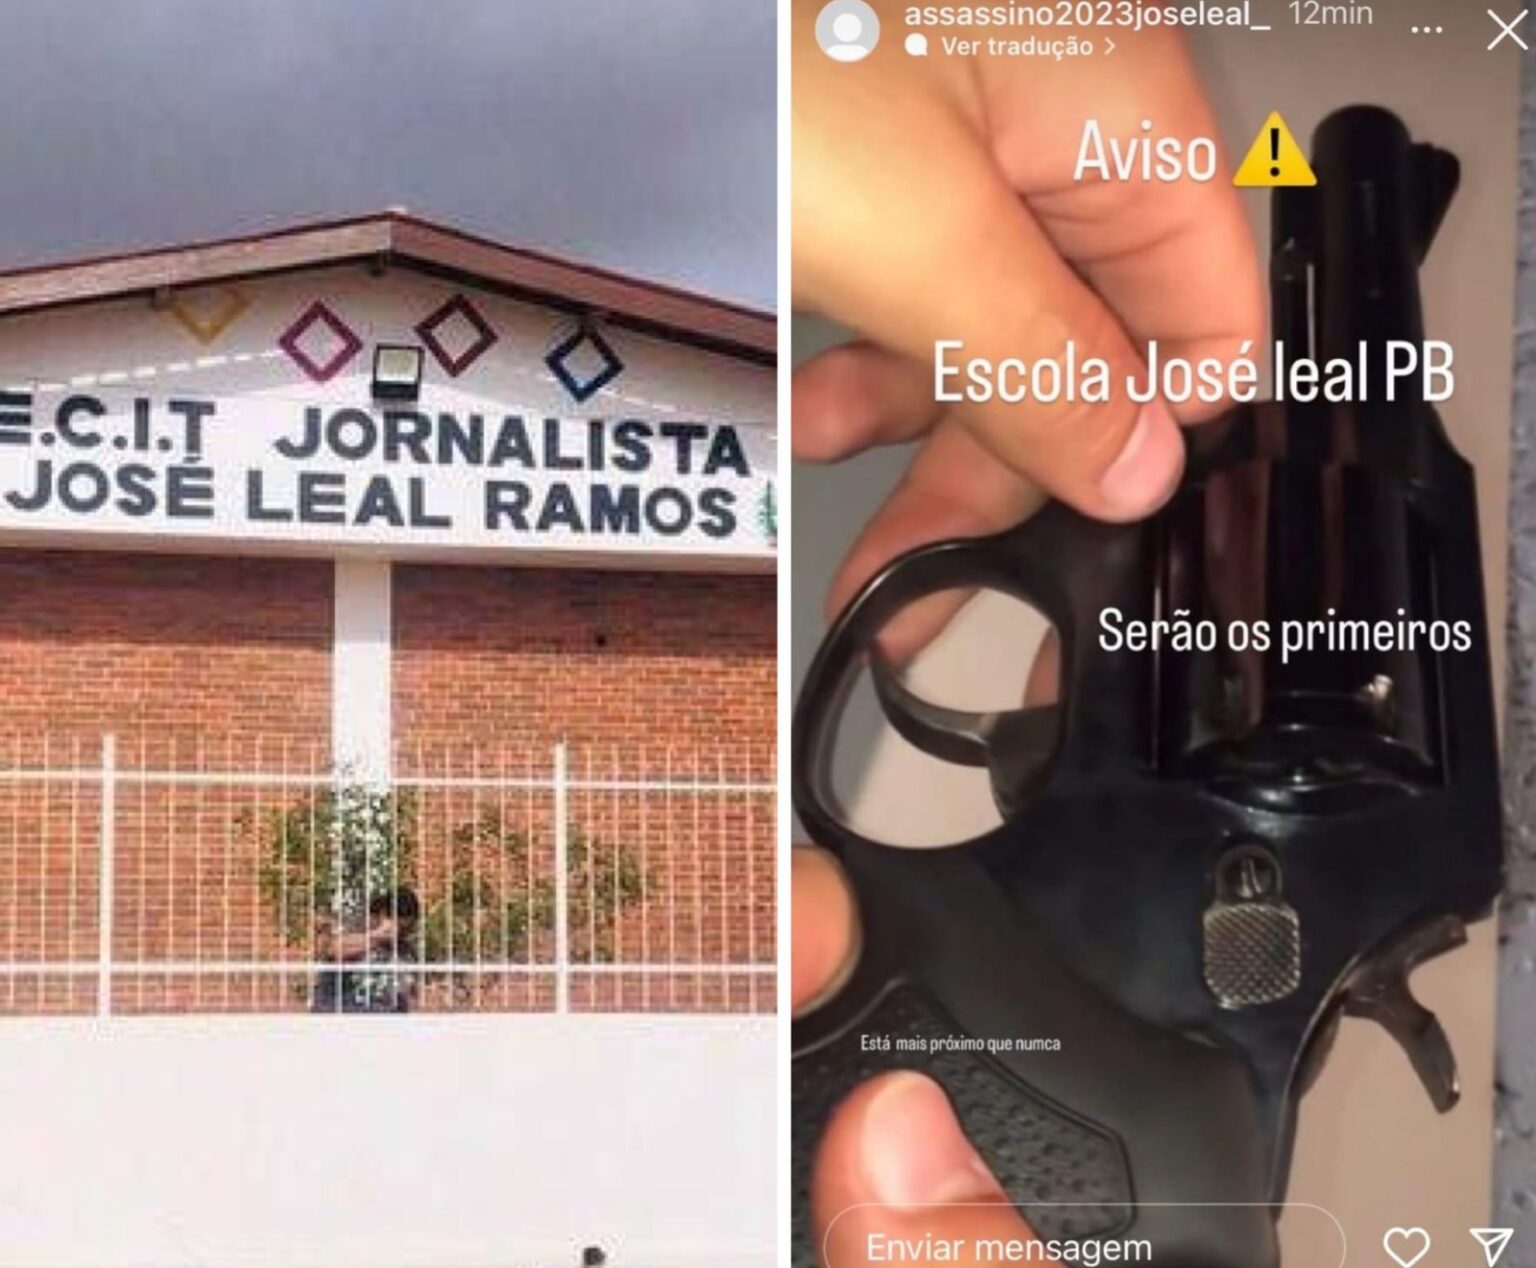 WhatsApp-Image-2023-04-13-at-11.58.57-1536x1268-1 Perfil falso publica ameaça de ataque à escola de São João do Cariri; polícia é acionada e diretora tranquiliza pais